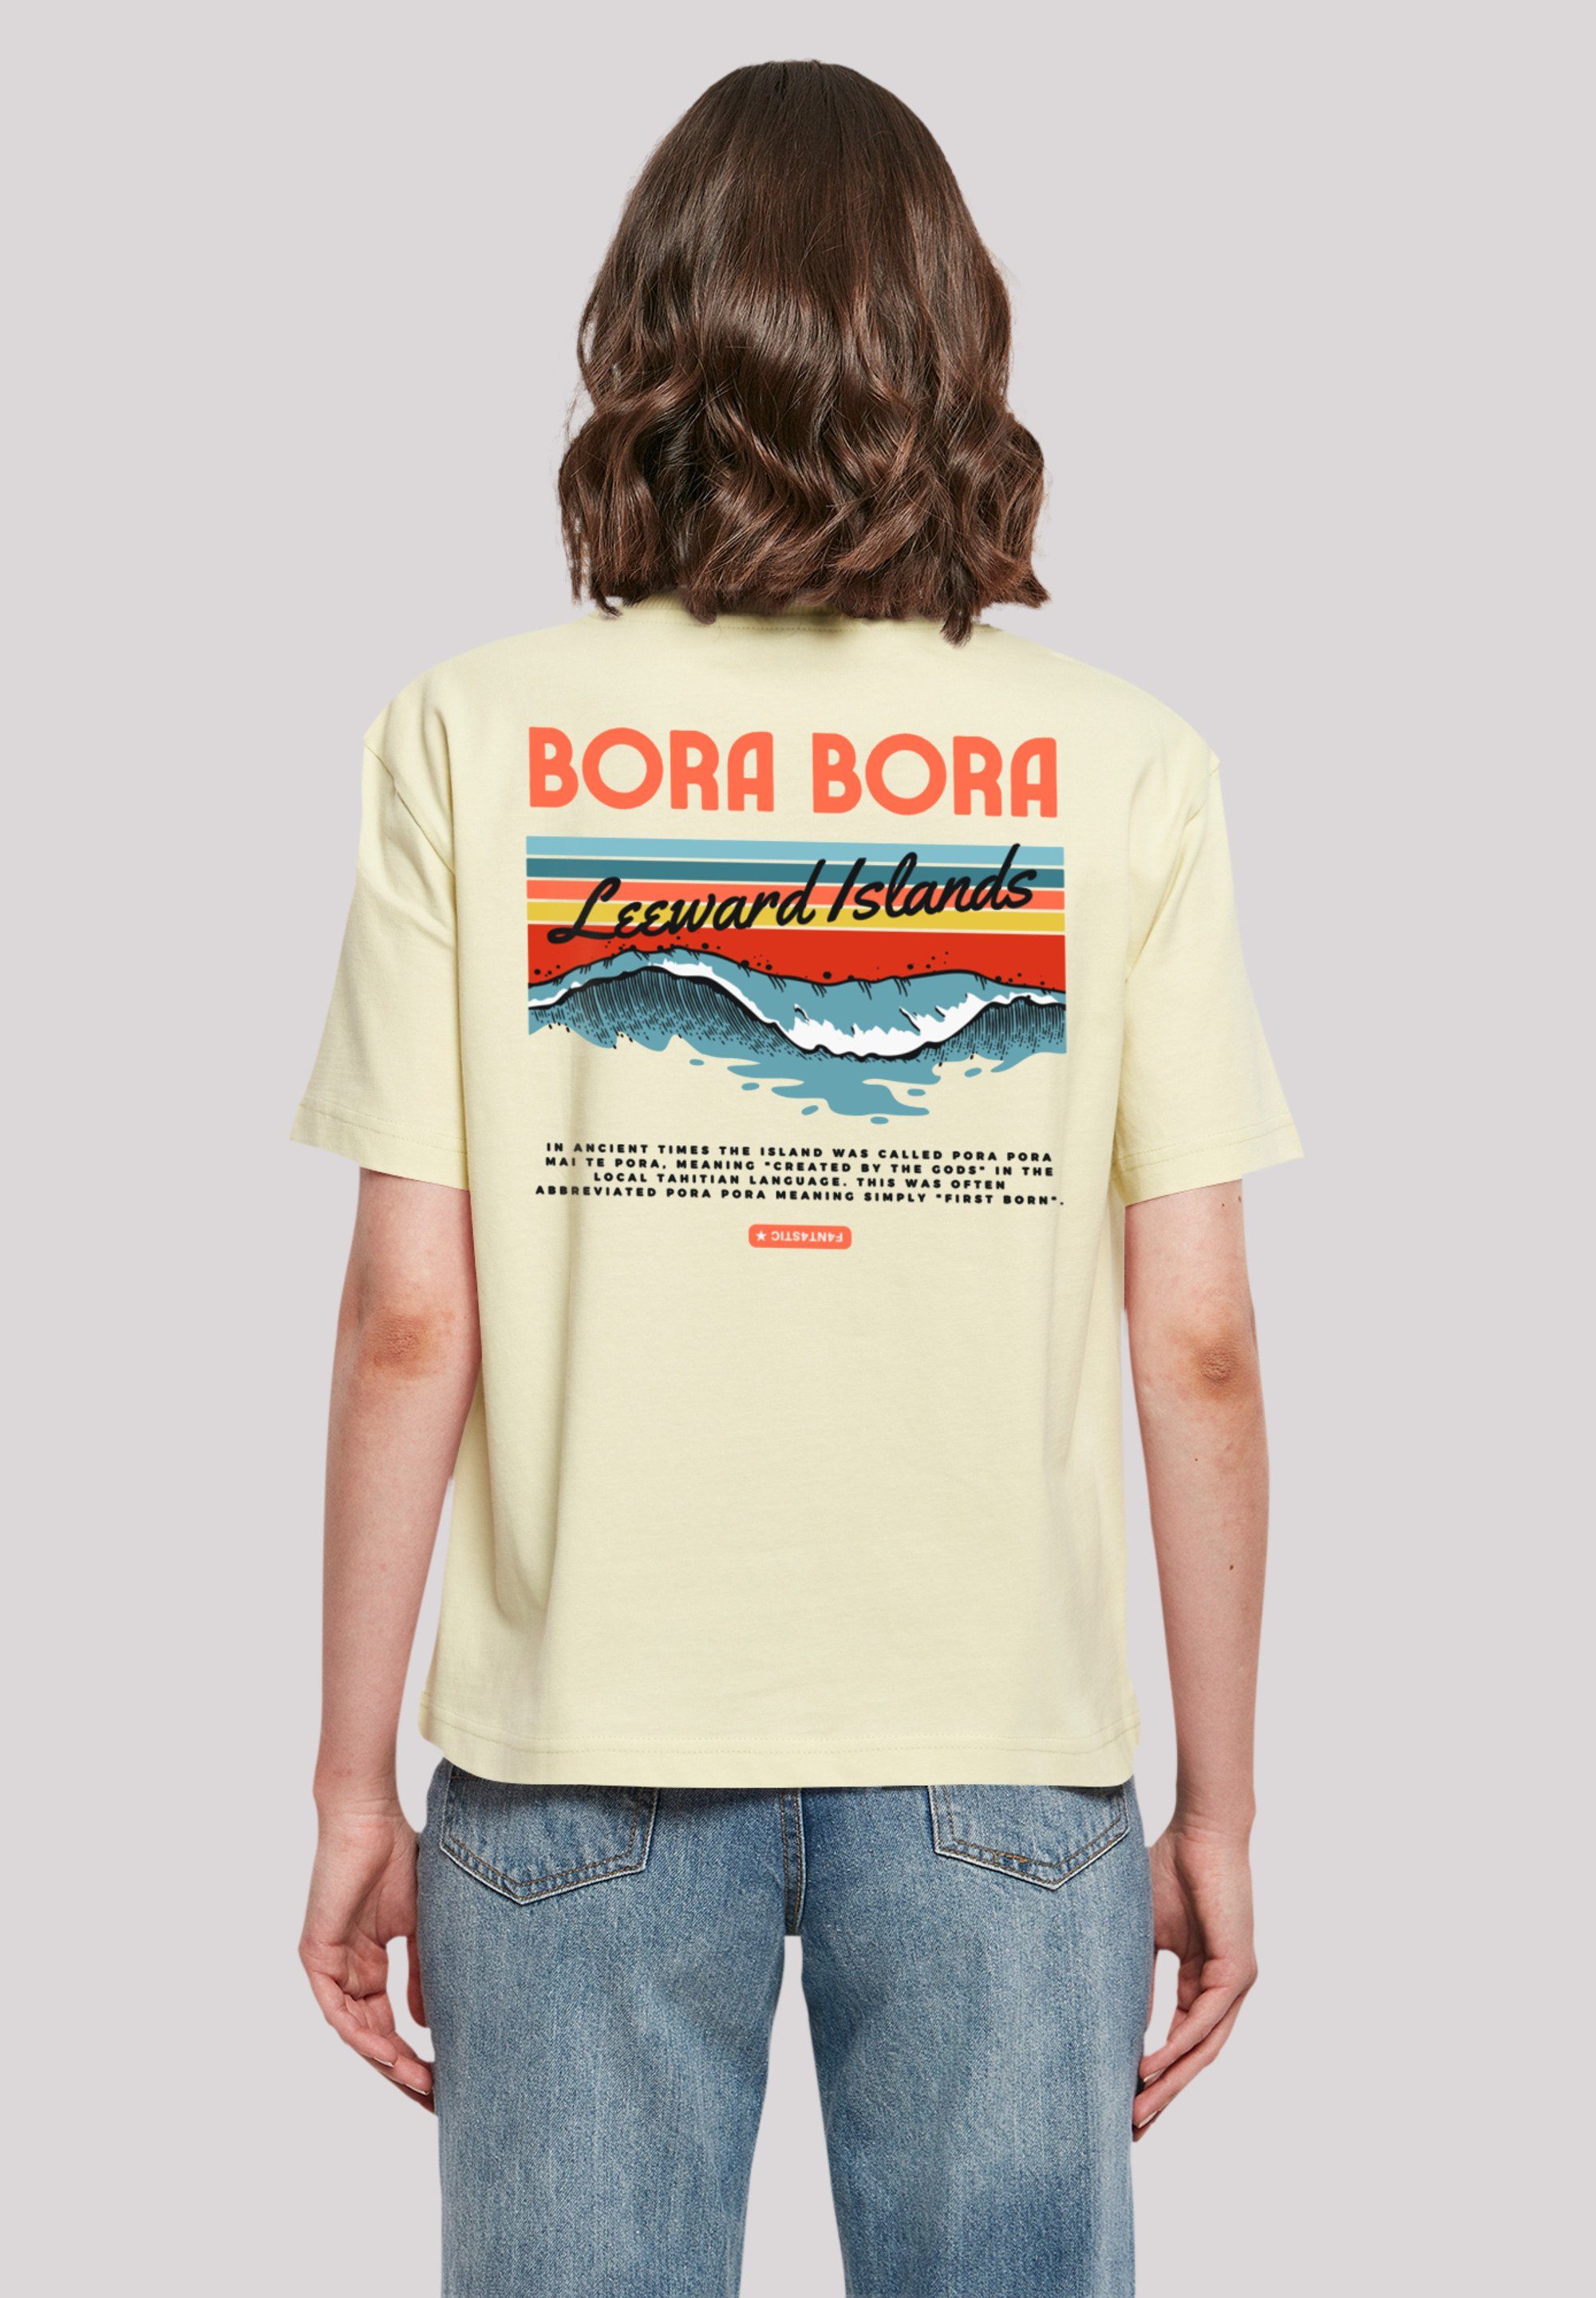 Rundhalsausschnitt Bora Bora T-Shirt Look Island Leewards F4NT4STIC stylischen Print, Gerippter für